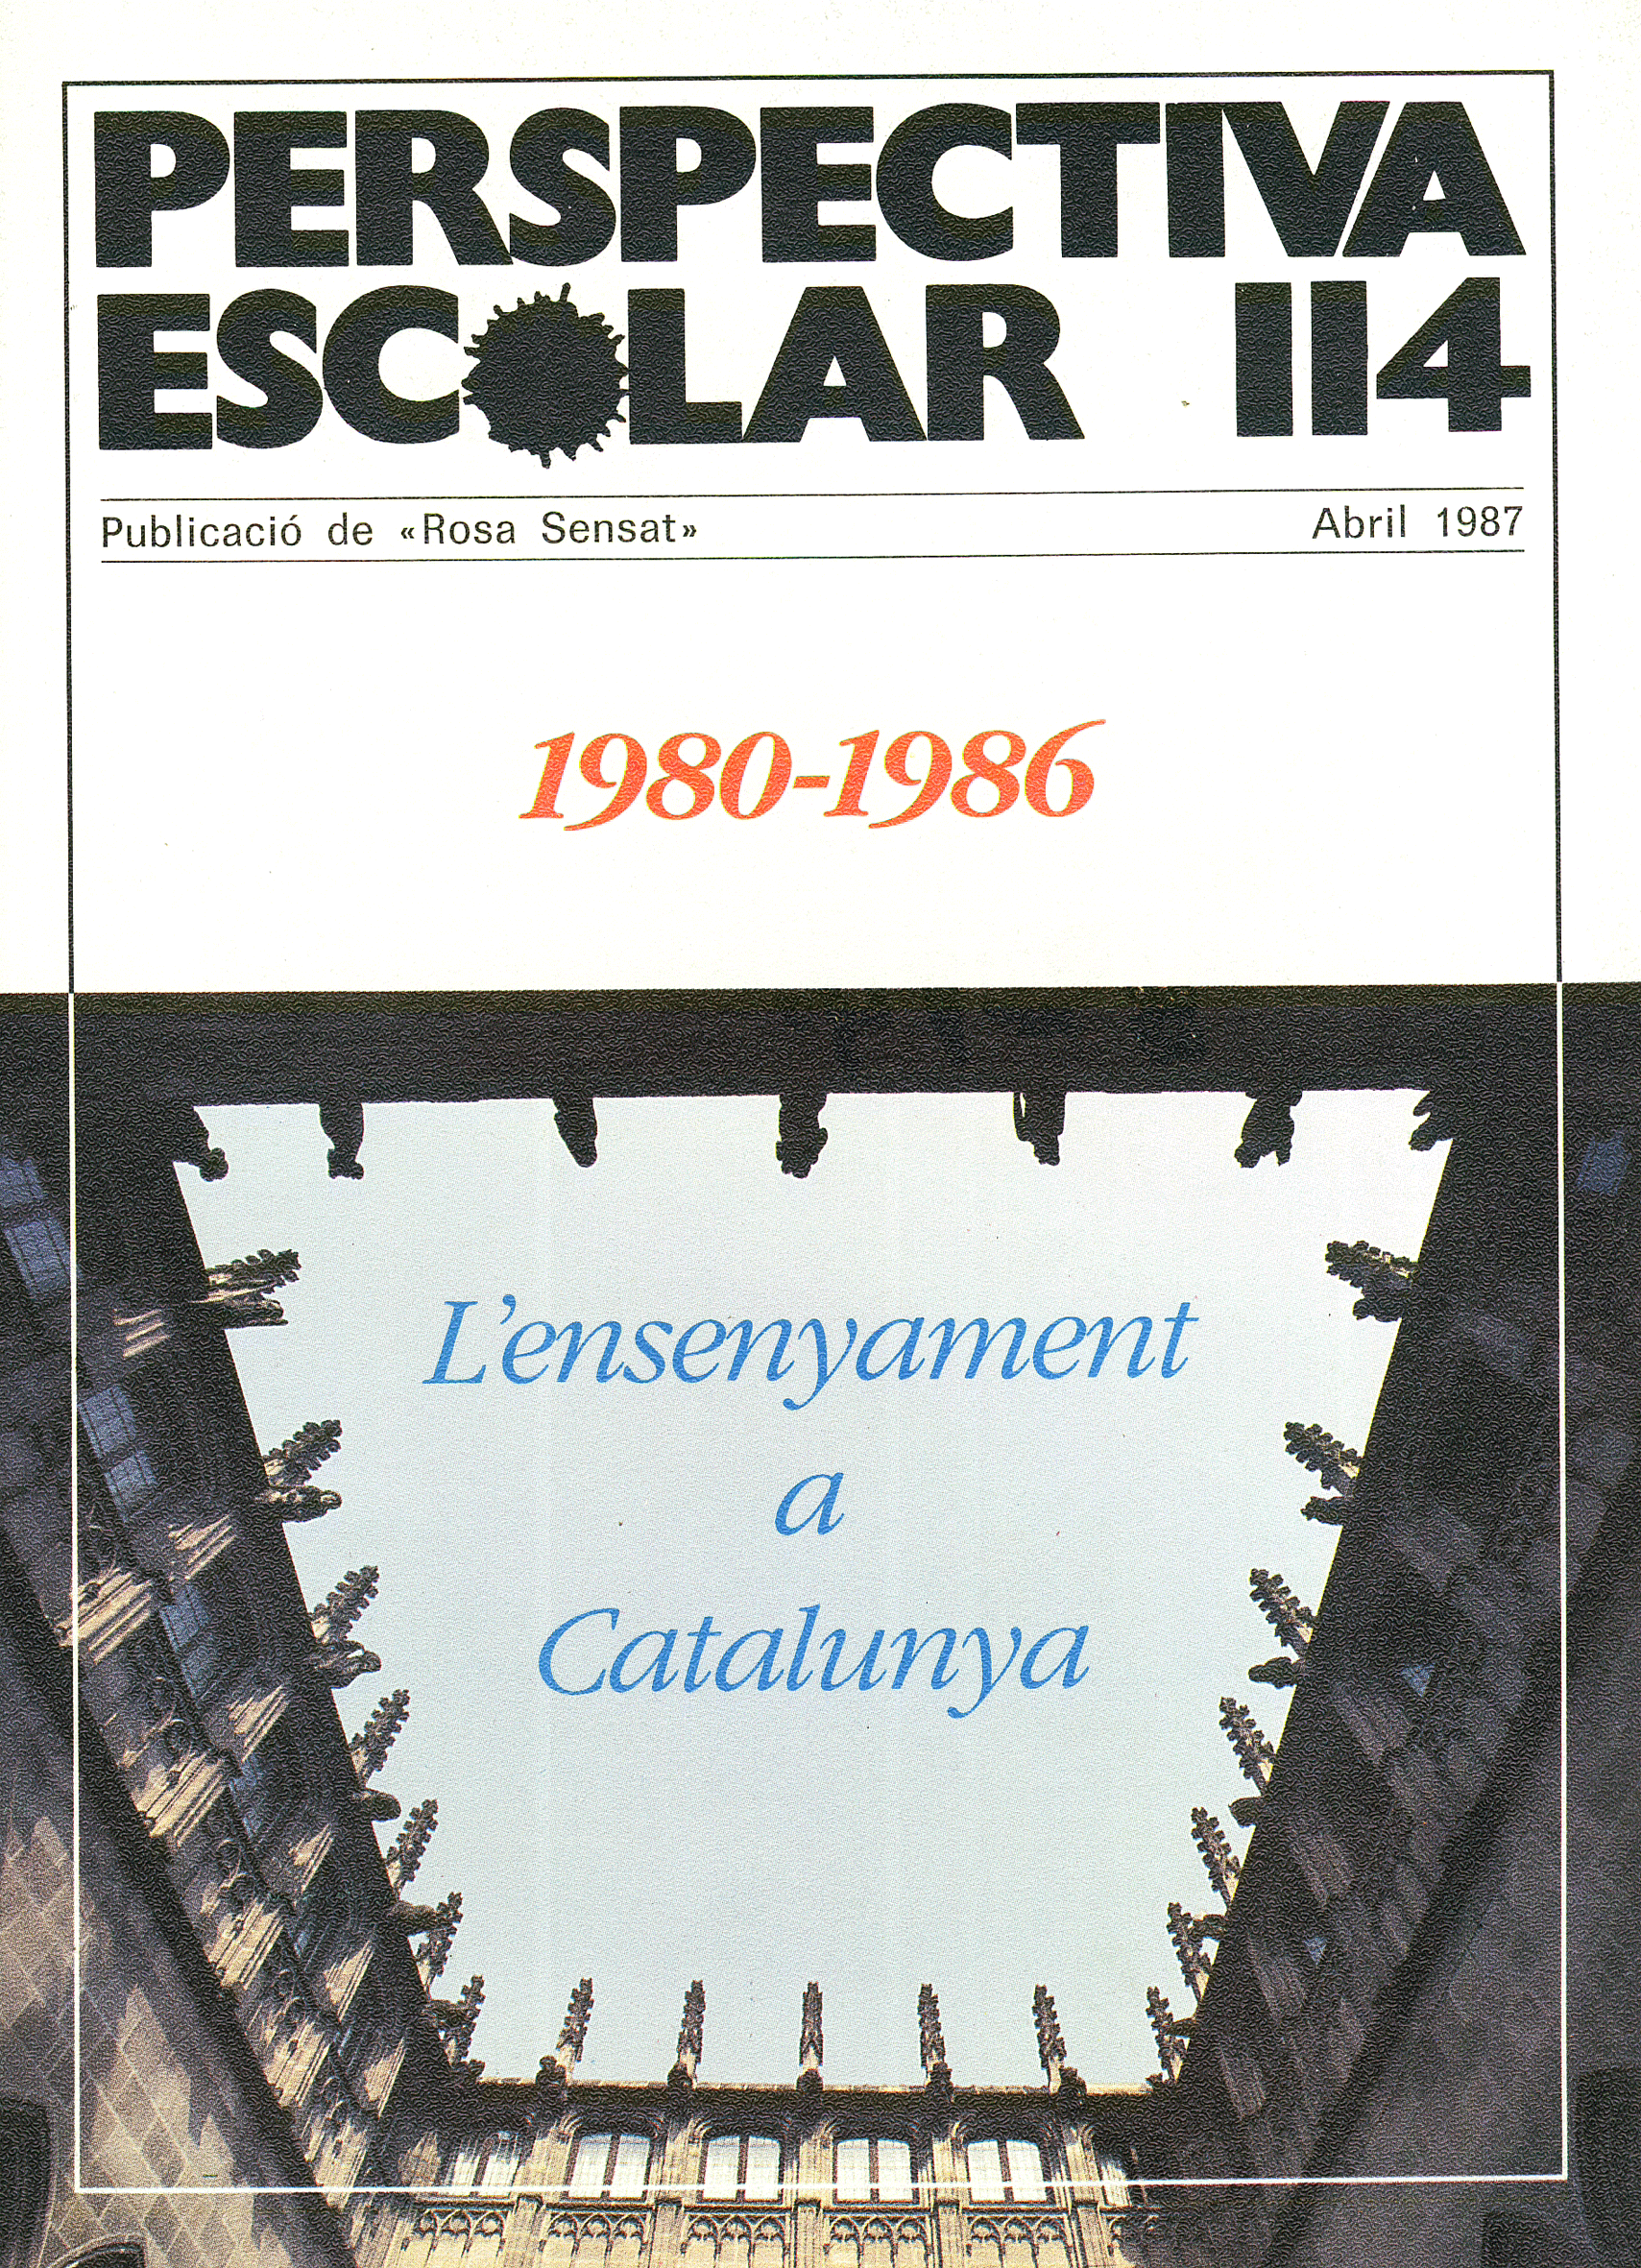 1980-1986 L’ensenyament a Catalunya Núm. 114